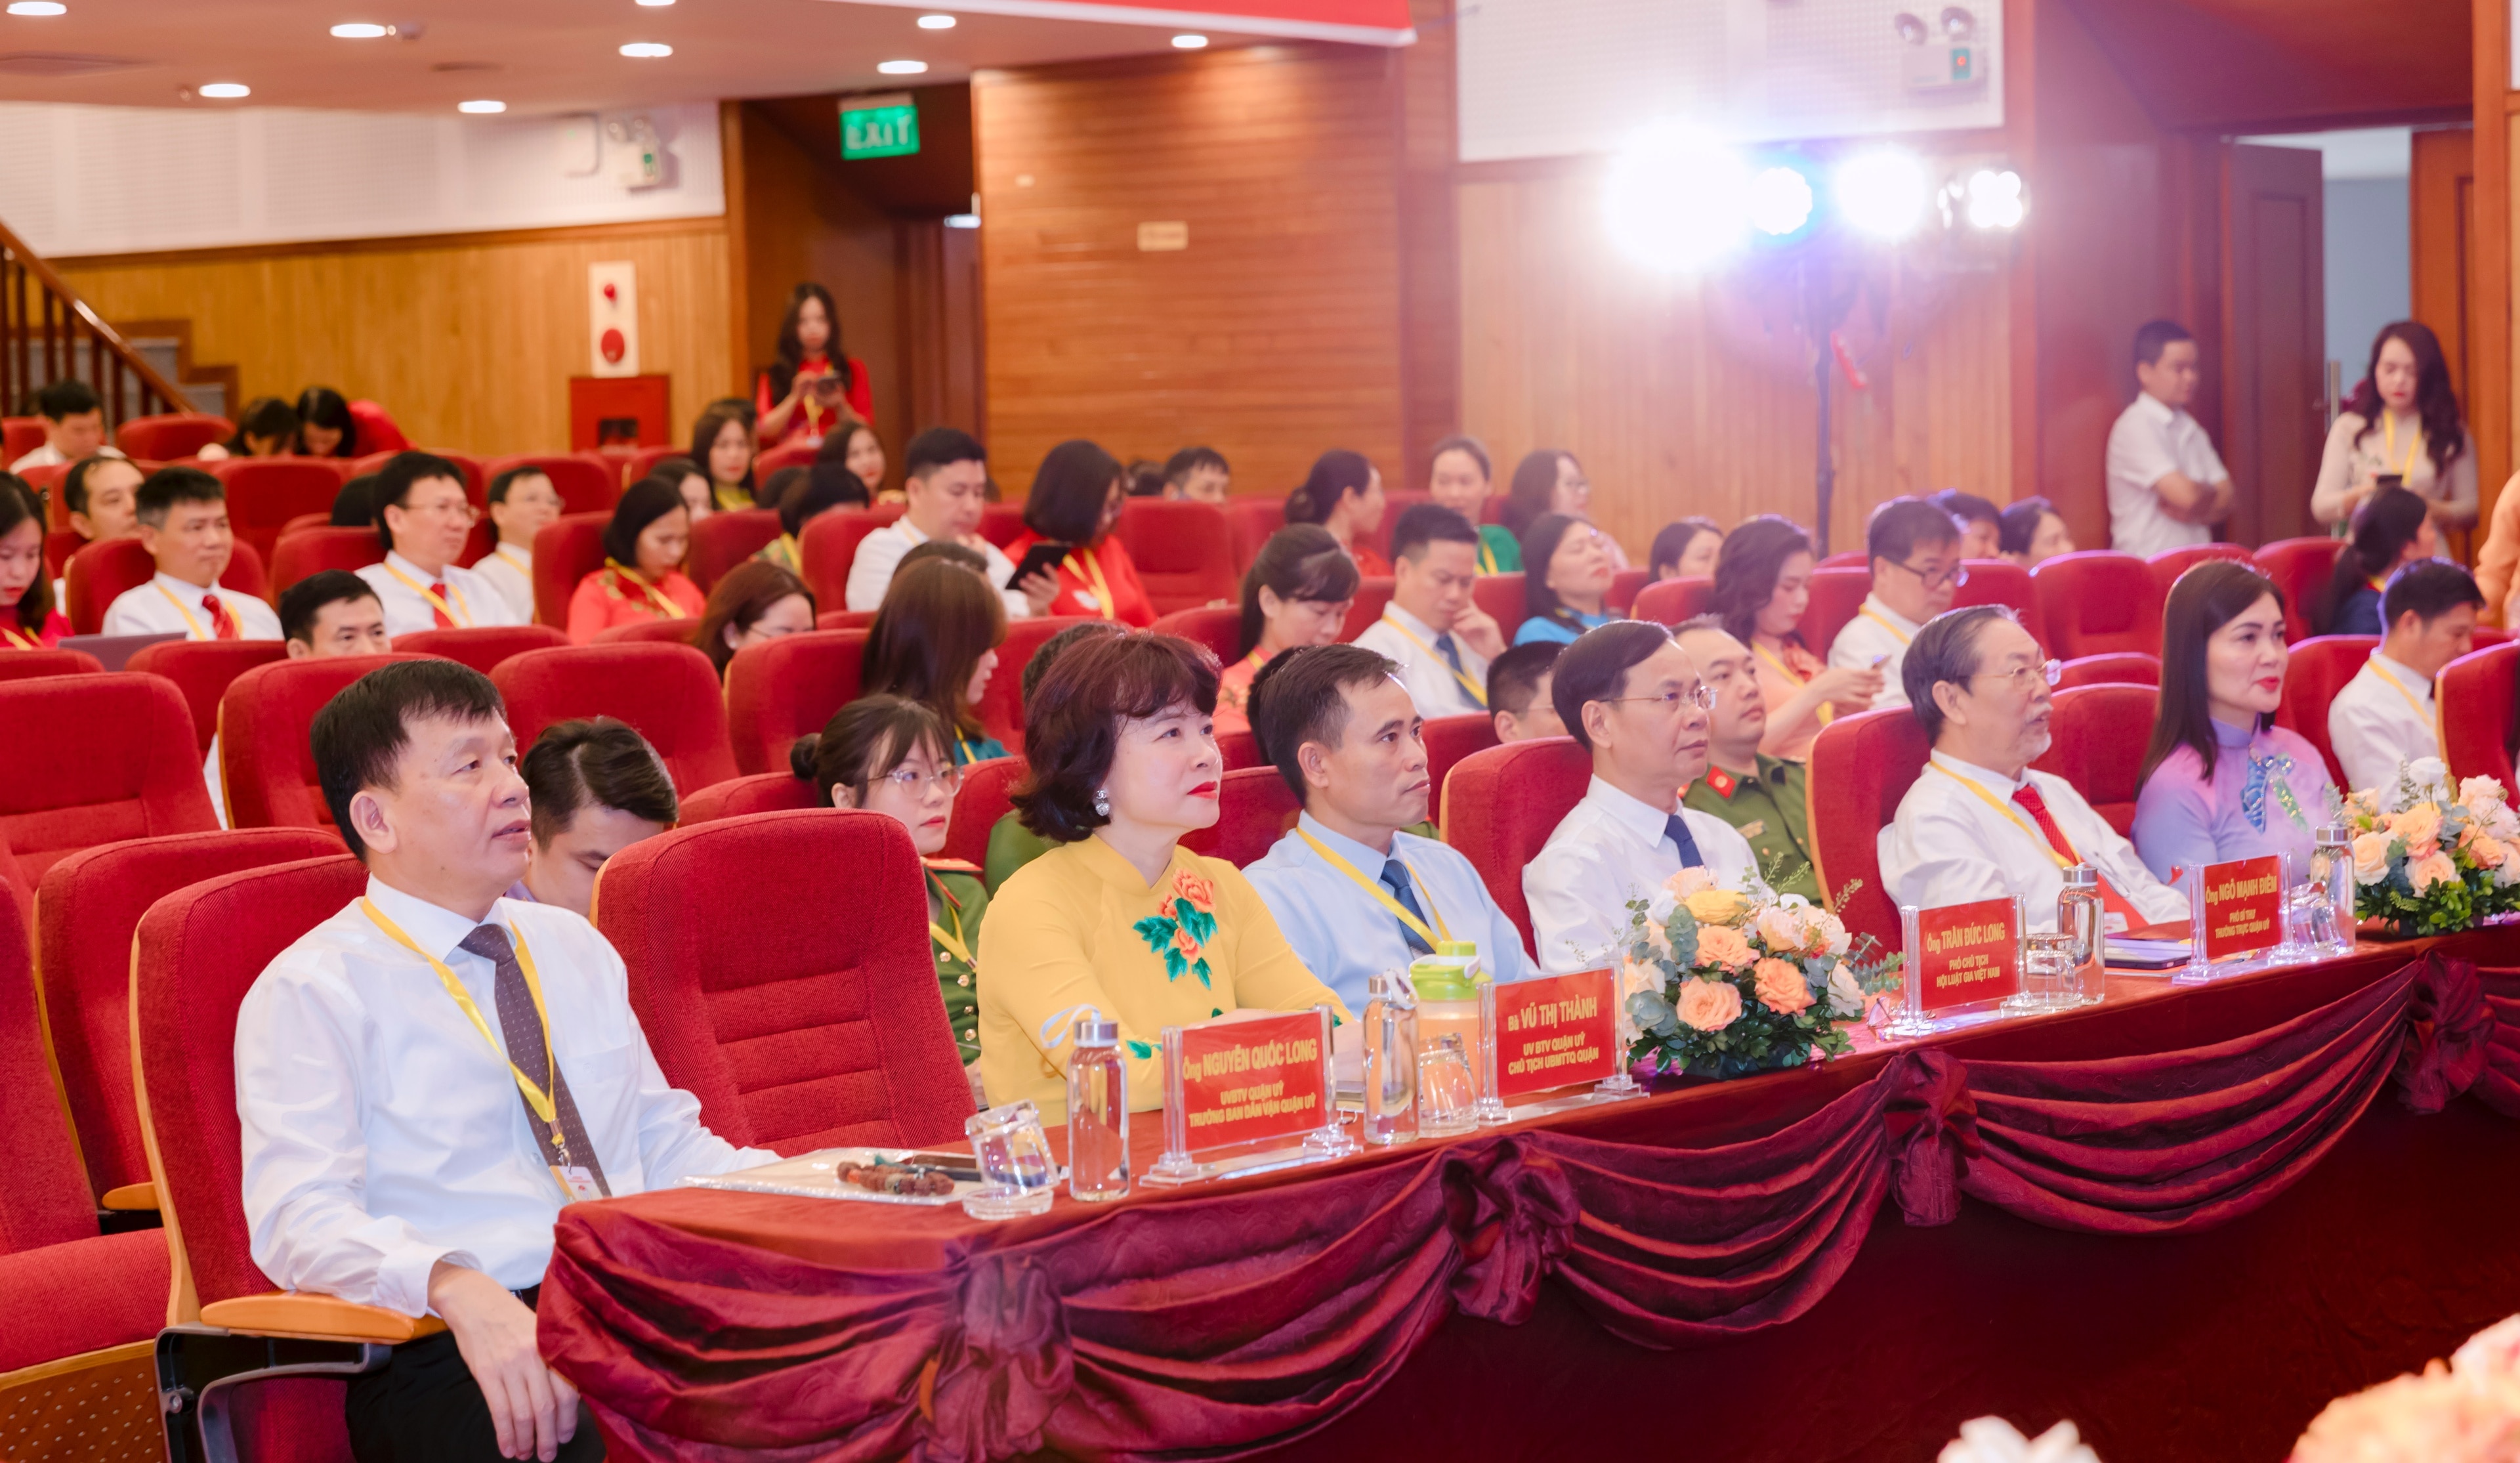 Tiêu điểm - Đại hội đại biểu HLG quận Long Biên: Kỷ cương, sáng tạo, phát triển